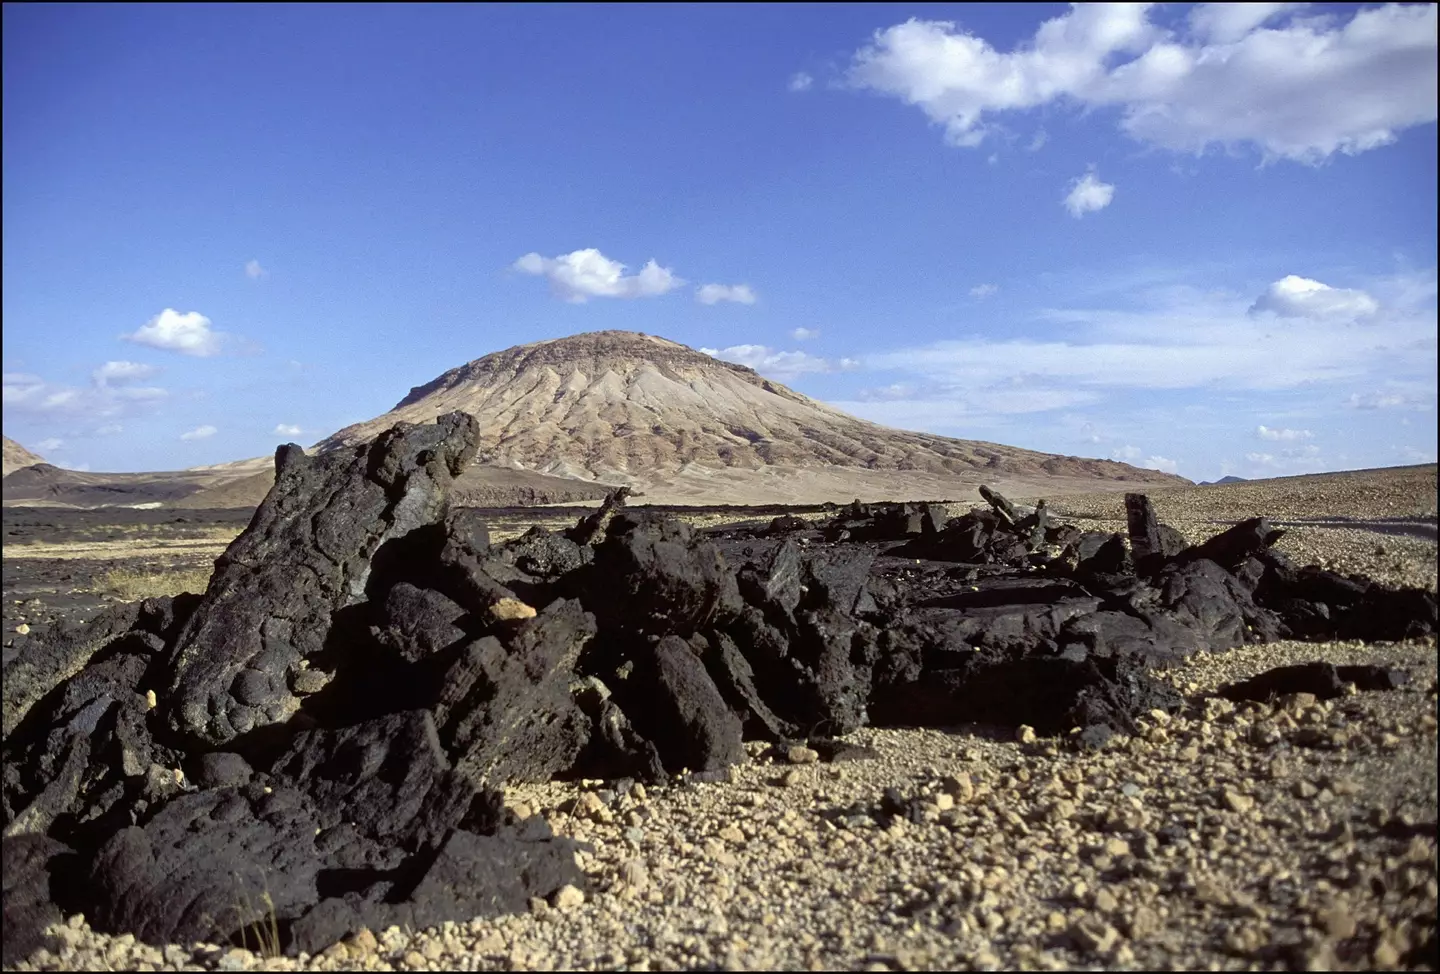 The cone of a volcano in Harrat Khaybar.